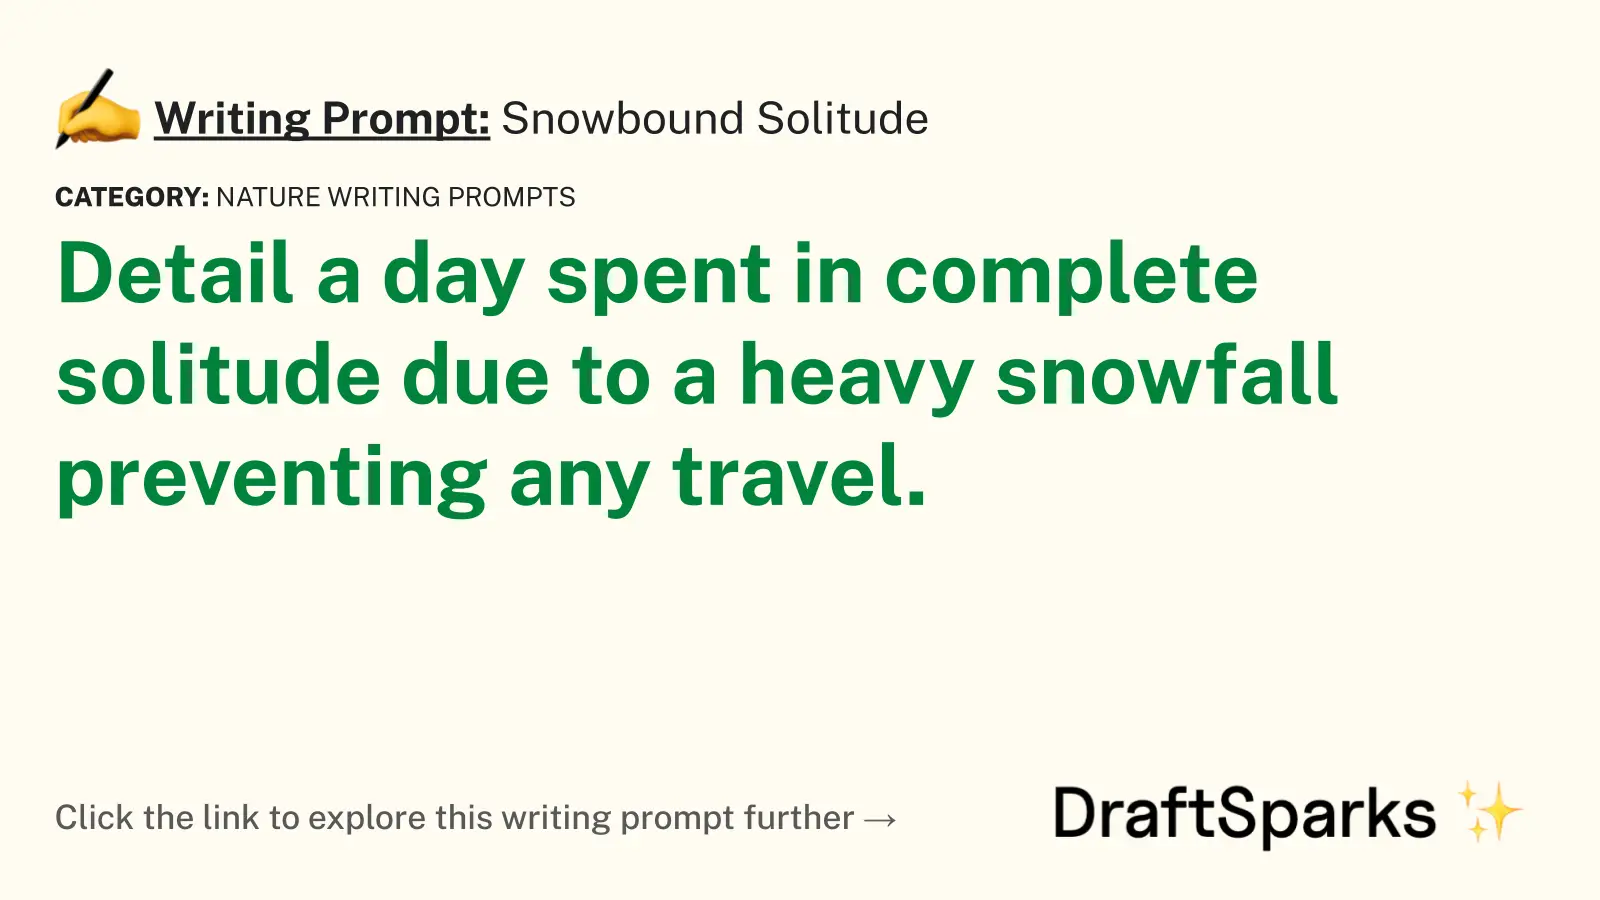 Snowbound Solitude